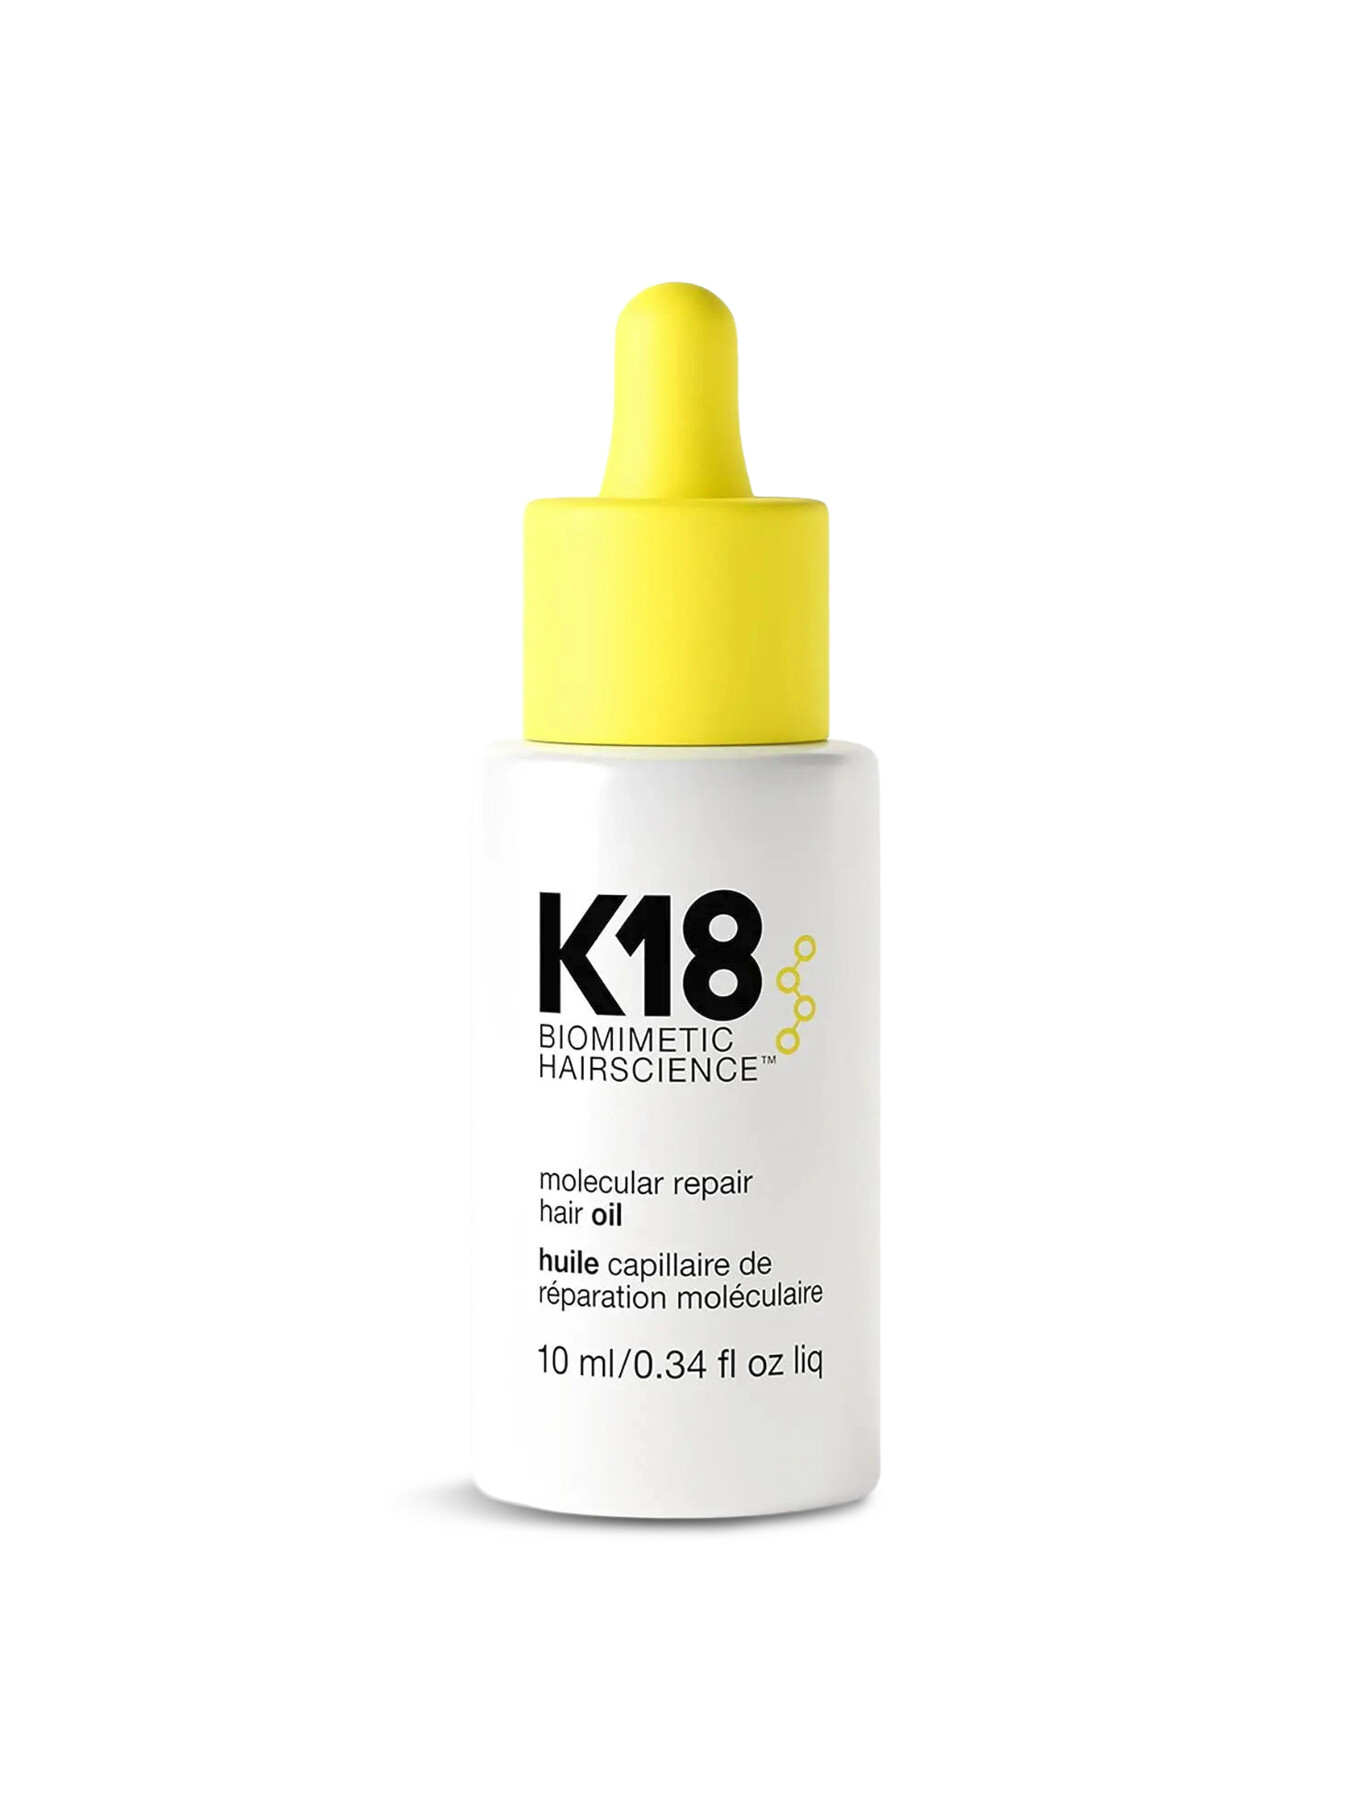 K18 Molecular Repair Hair Oil 10ml | Serum & Oil | Fenwick